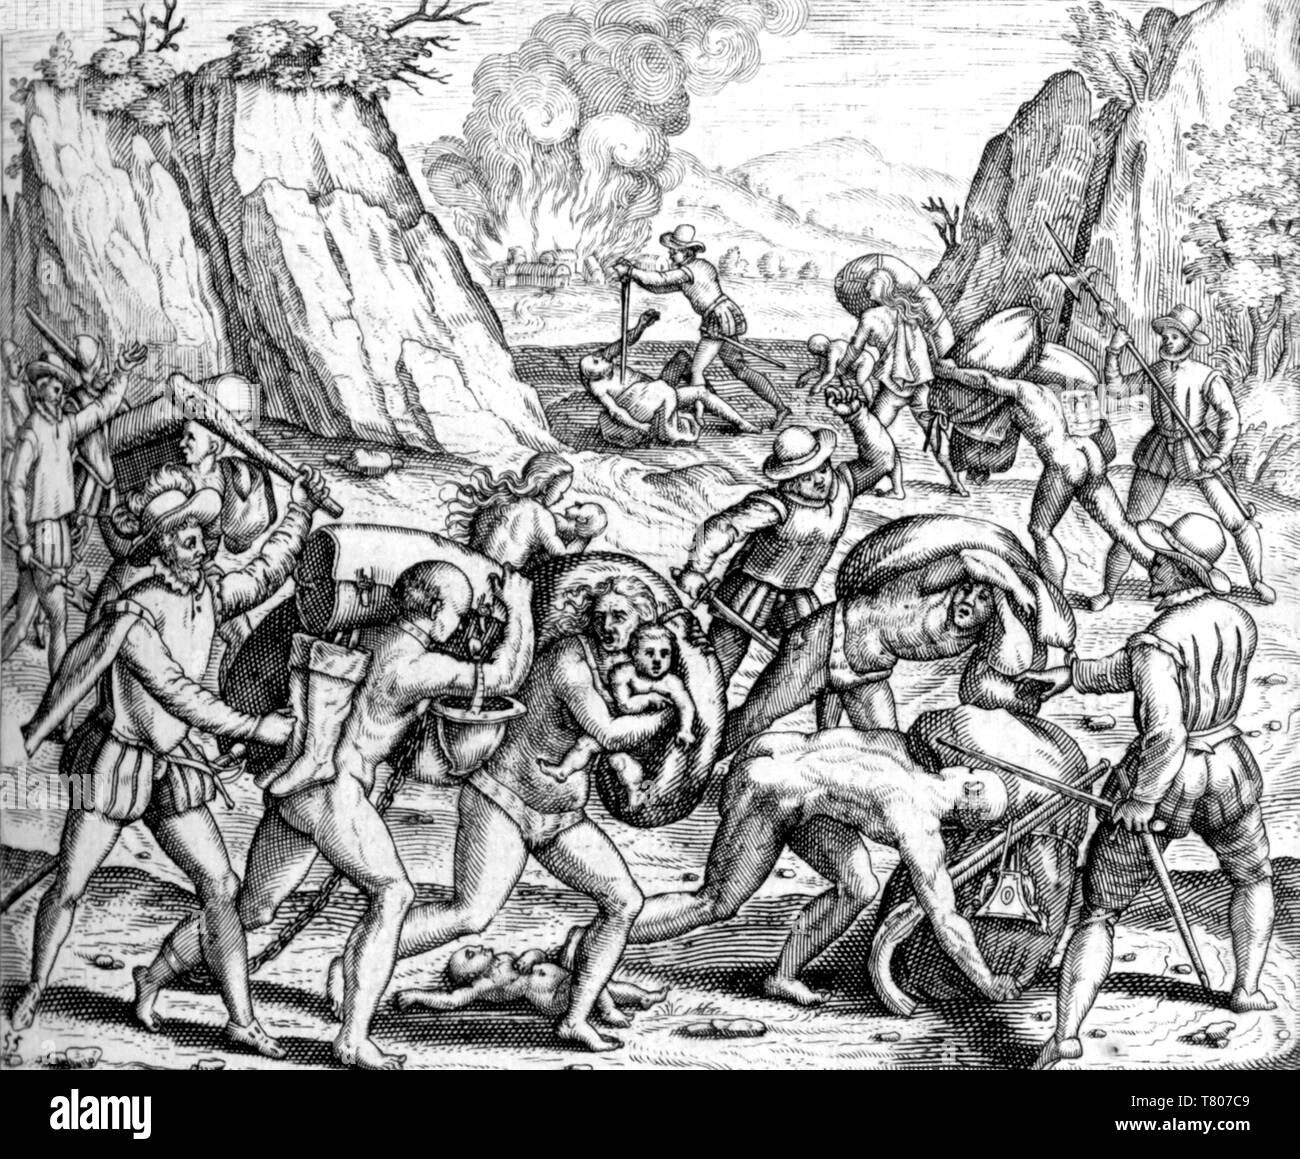 La persécution espagnole dans les Antilles, l'esclavage, 16e siècle Banque D'Images